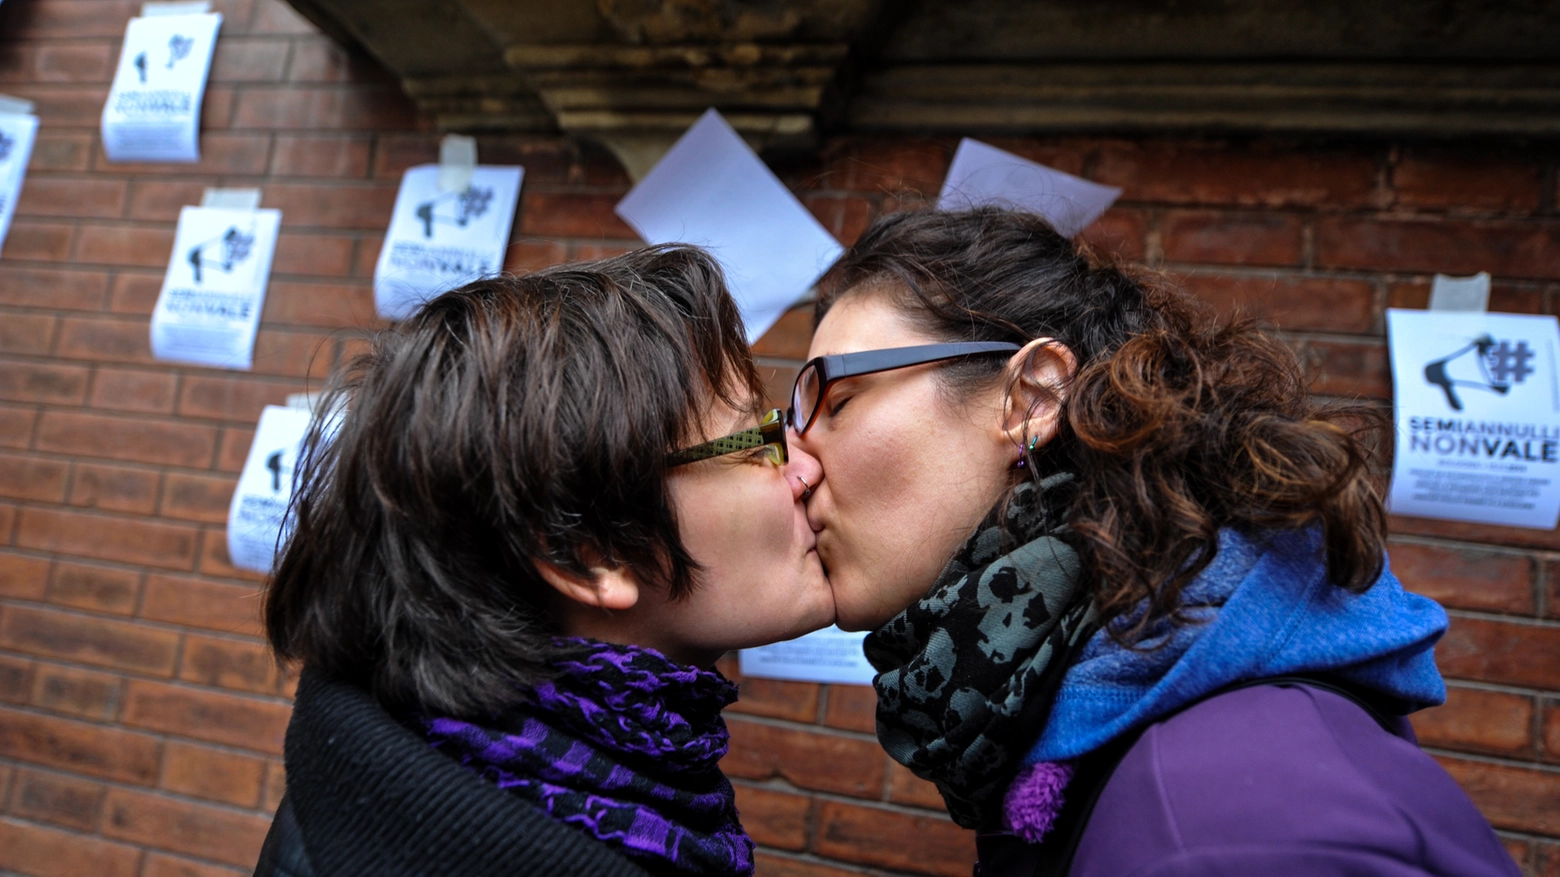 Nozze gay, due manifestanti si baciano davanti alla Prefettura